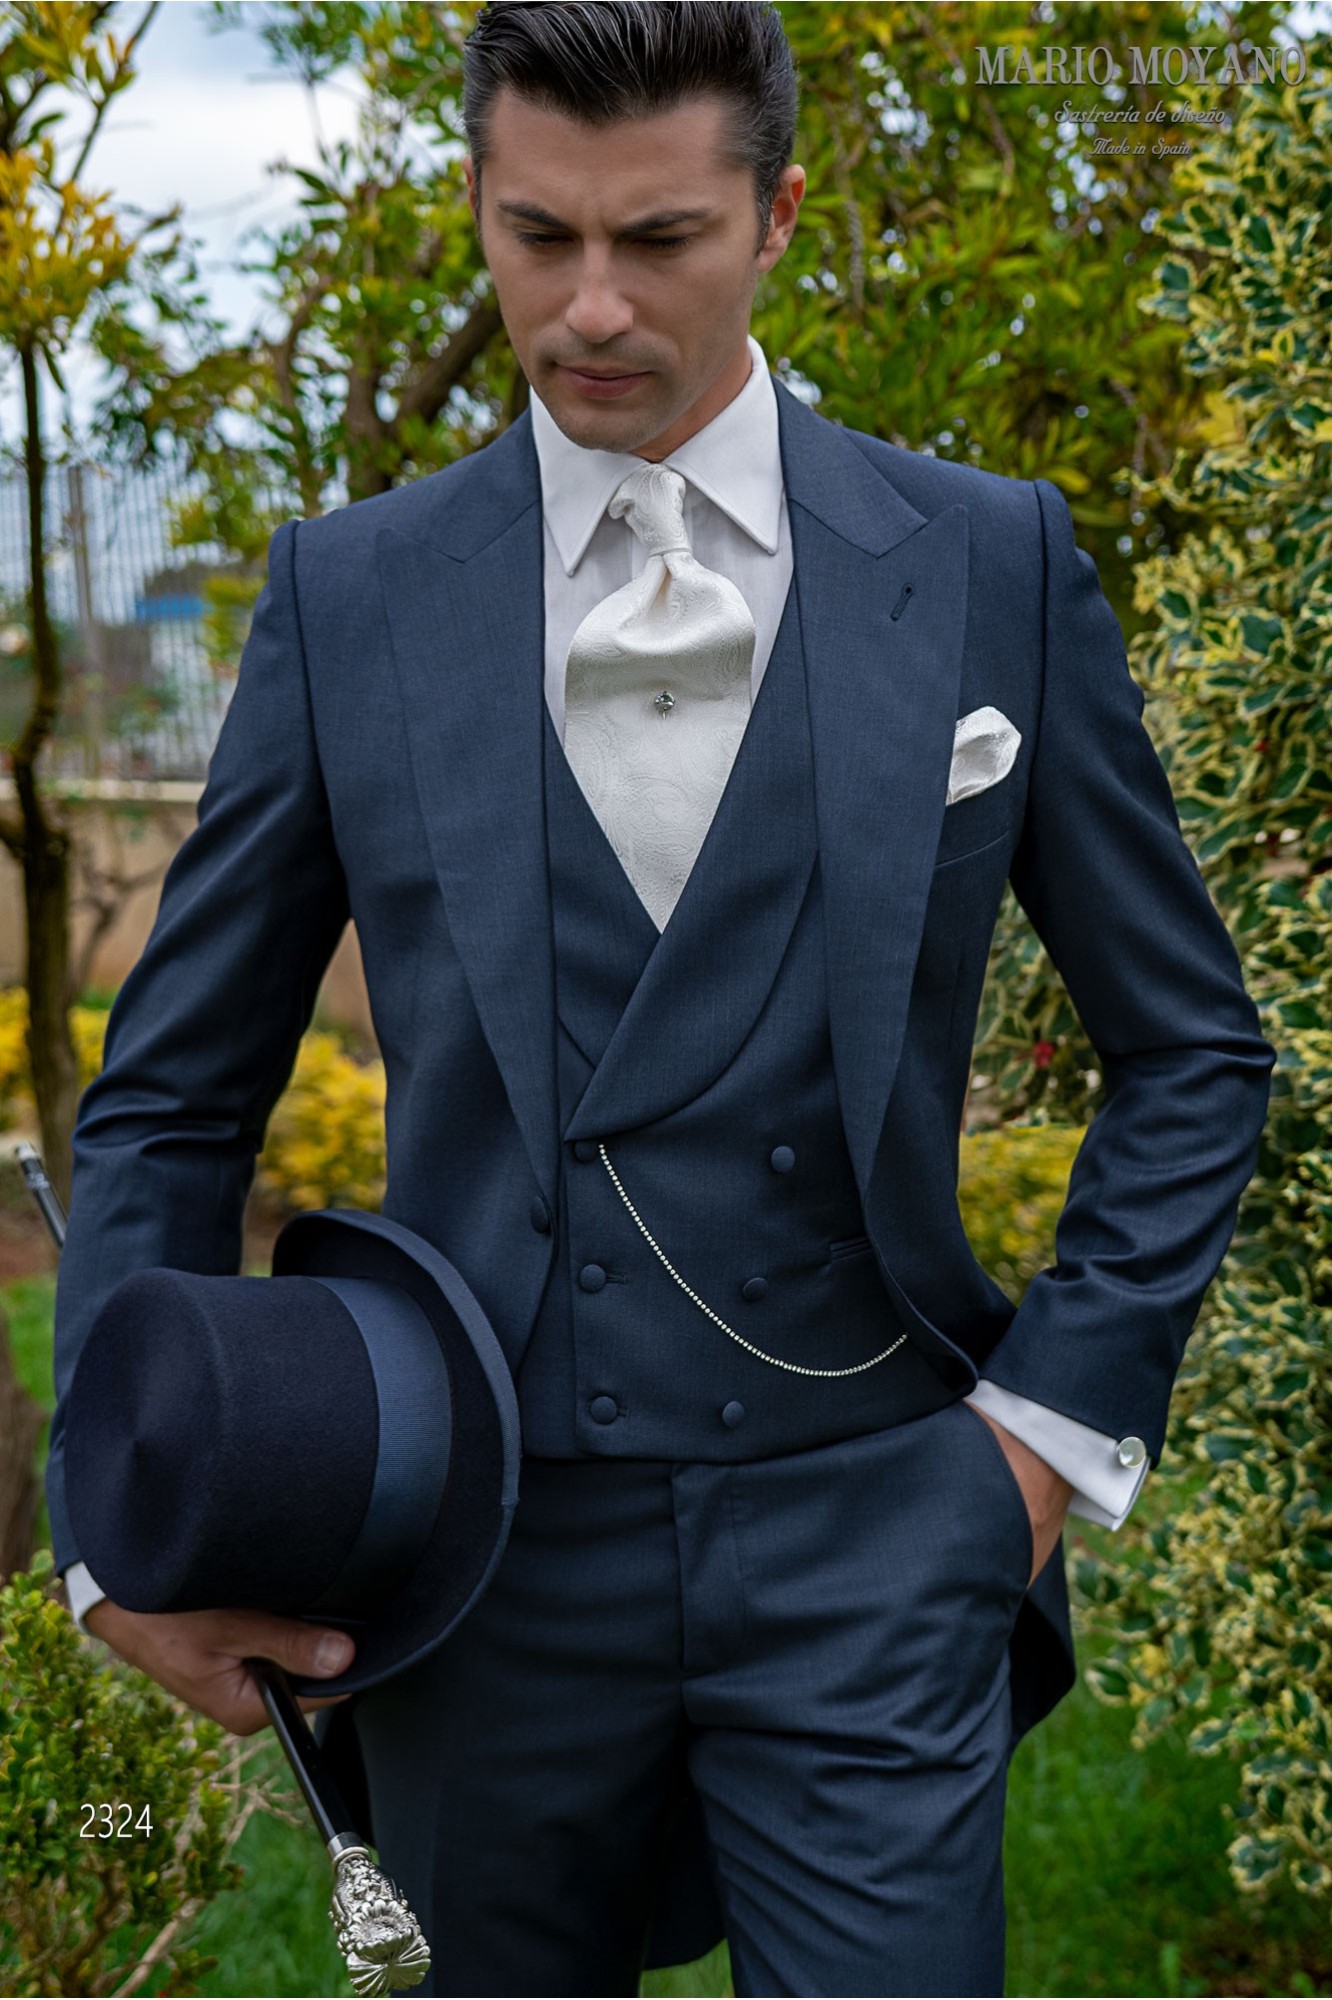 Jaquette de mariage bleu en pure laine modèle 2324 Mario Moyano